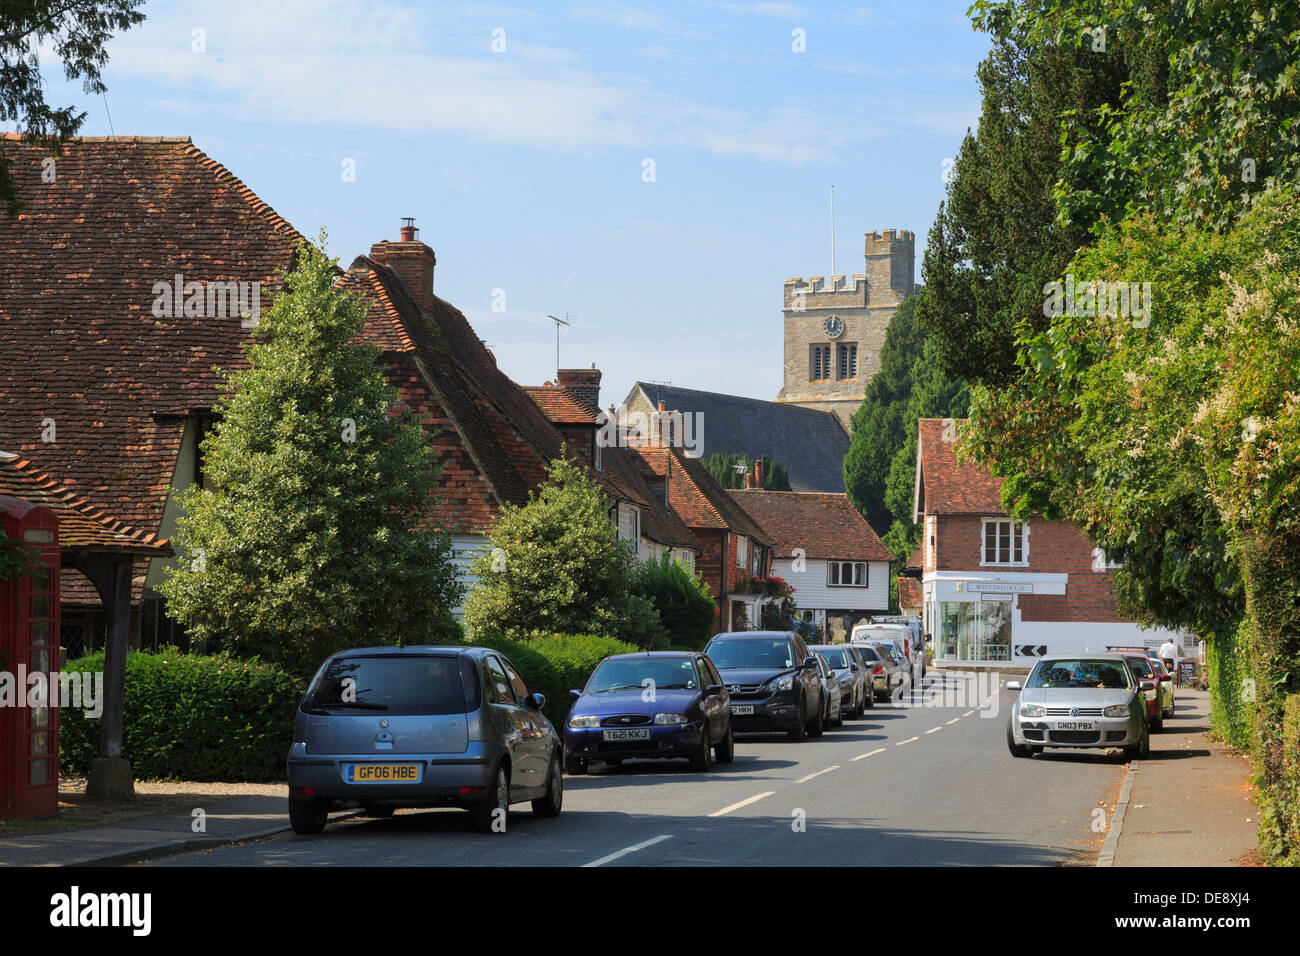 Vue de l'église du village avec des voitures garées le long de la rue, North Harrow, Kent, Angleterre, Royaume-Uni, Angleterre Banque D'Images